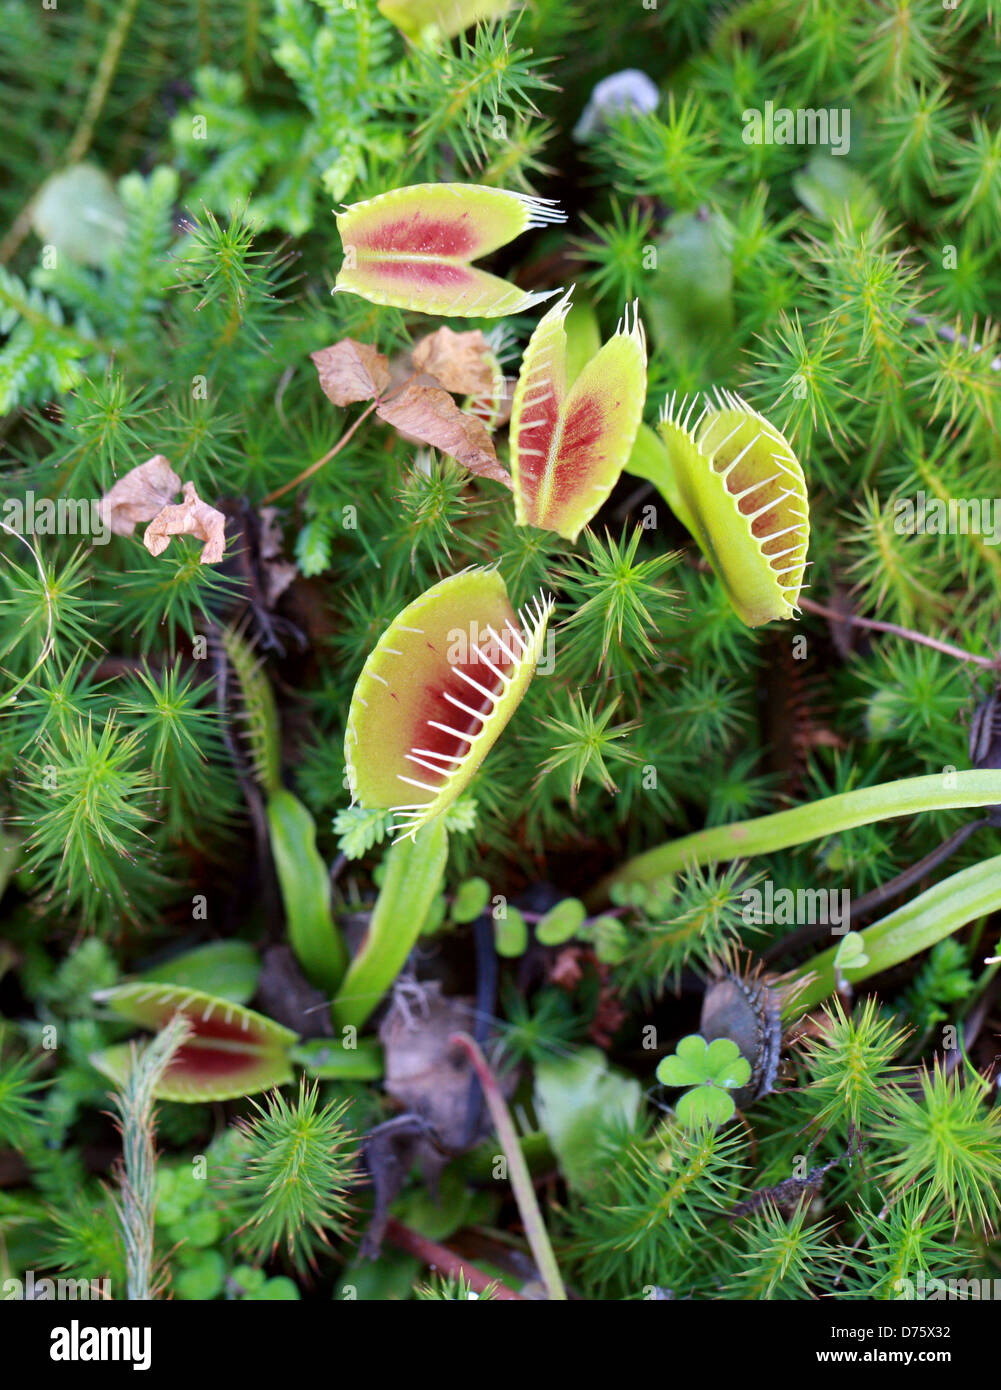 Venus atrapamoscas, Dionaea muscipula, Droseraceae. Carolina del Norte, EE.UU., en América del Norte. Una planta carnívora. Foto de stock